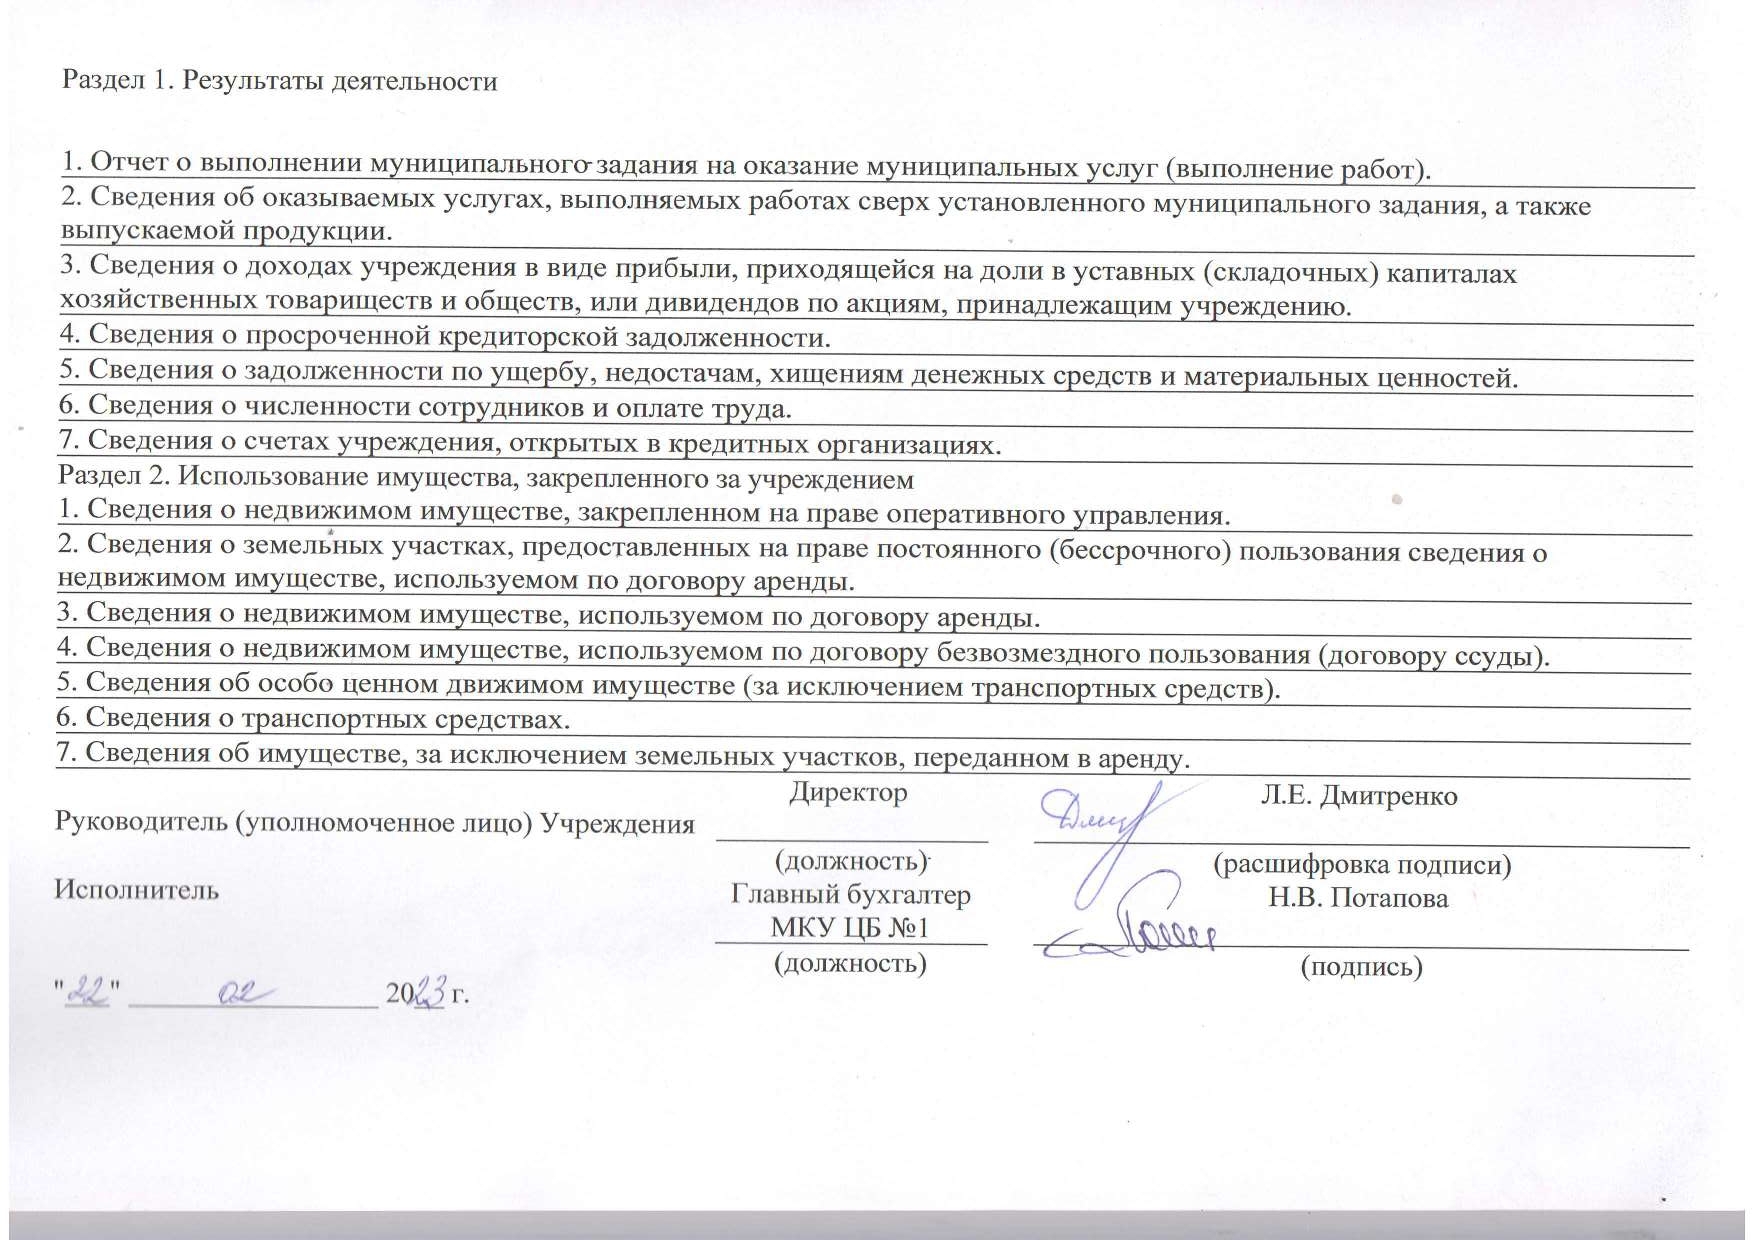 Отчет о результатах деятельности муниципального учреждения на 01.01.2023 г_page-0002.jpg